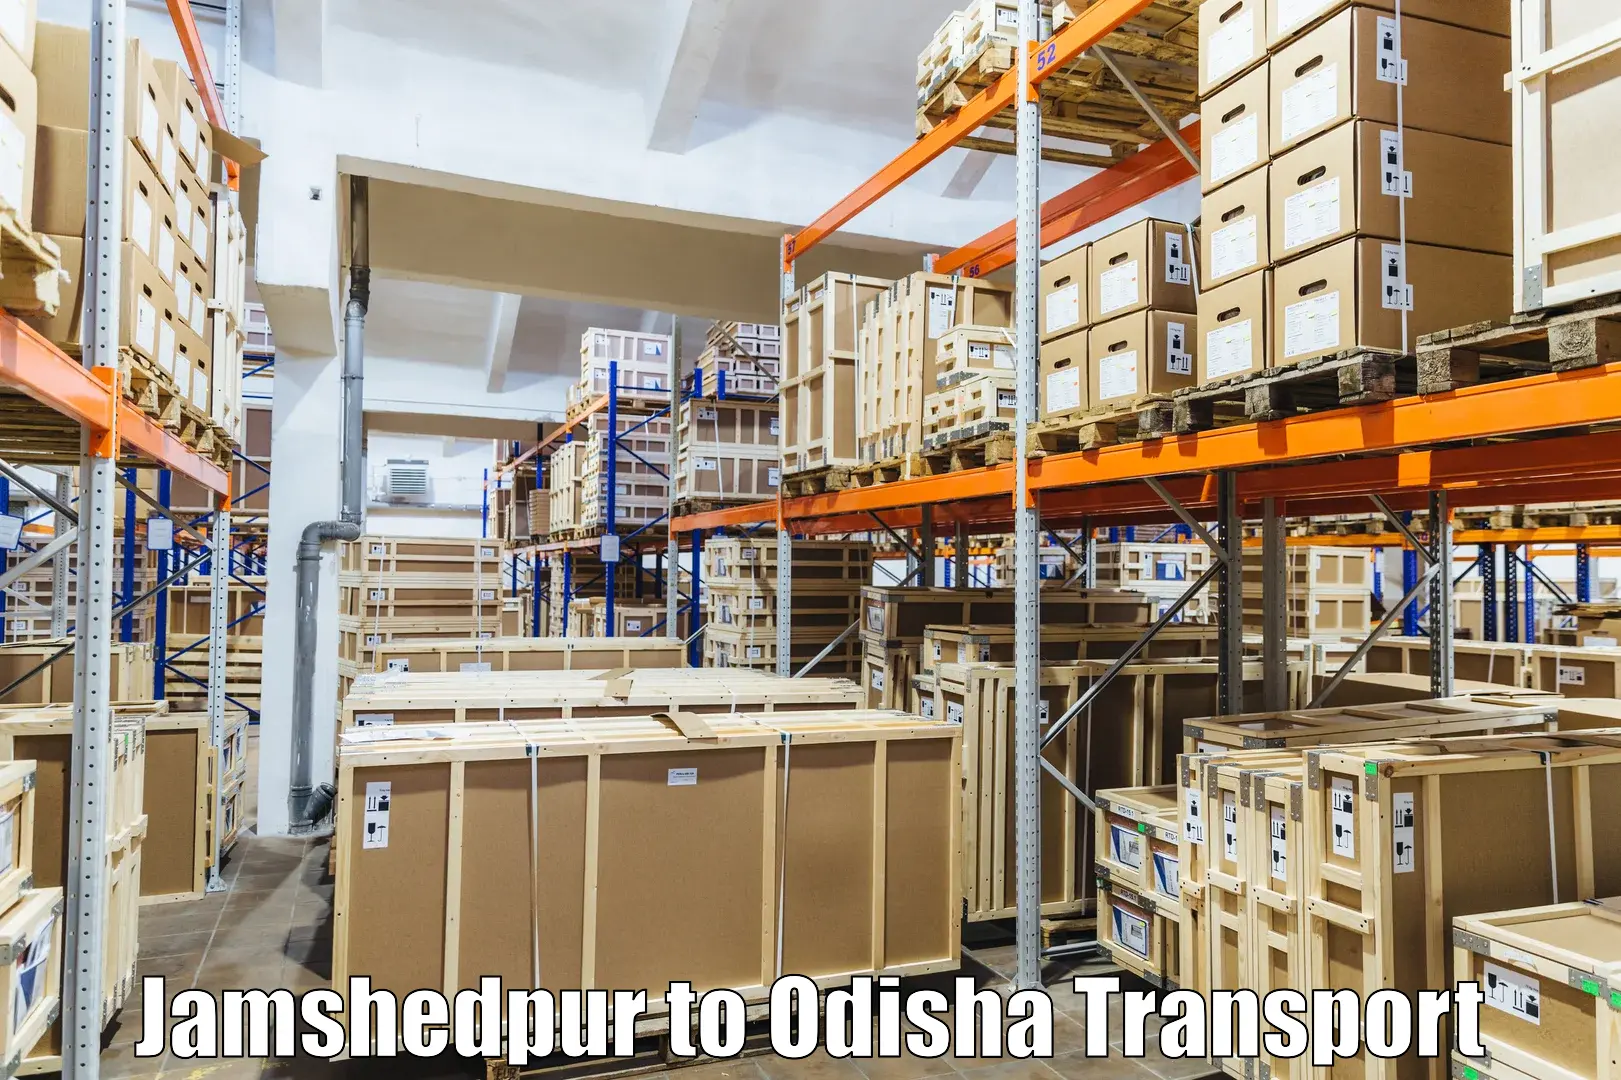 Transport in sharing Jamshedpur to Baisinga